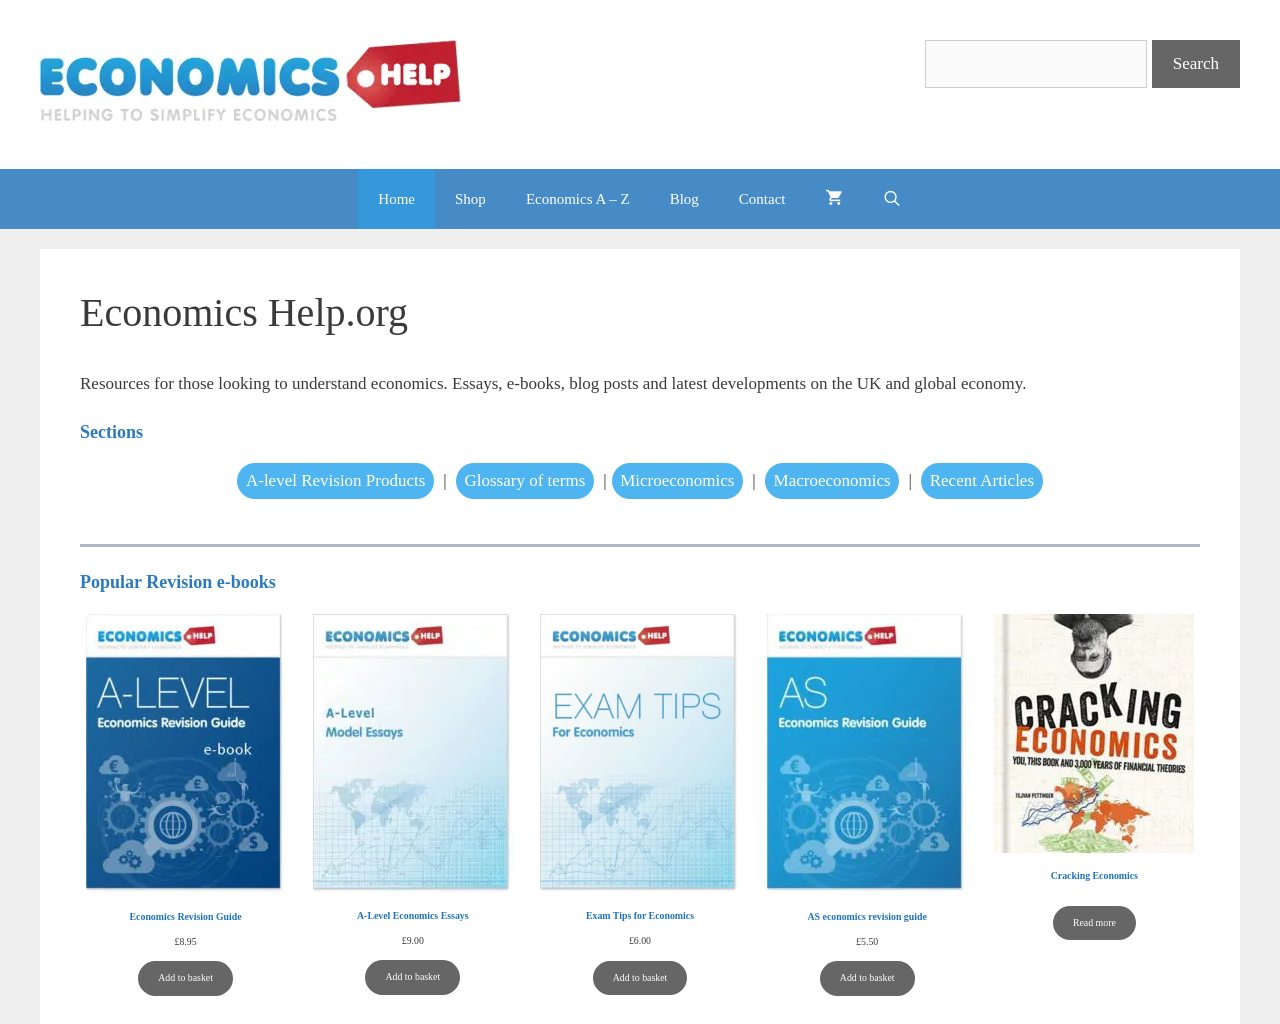 economicshelp.org